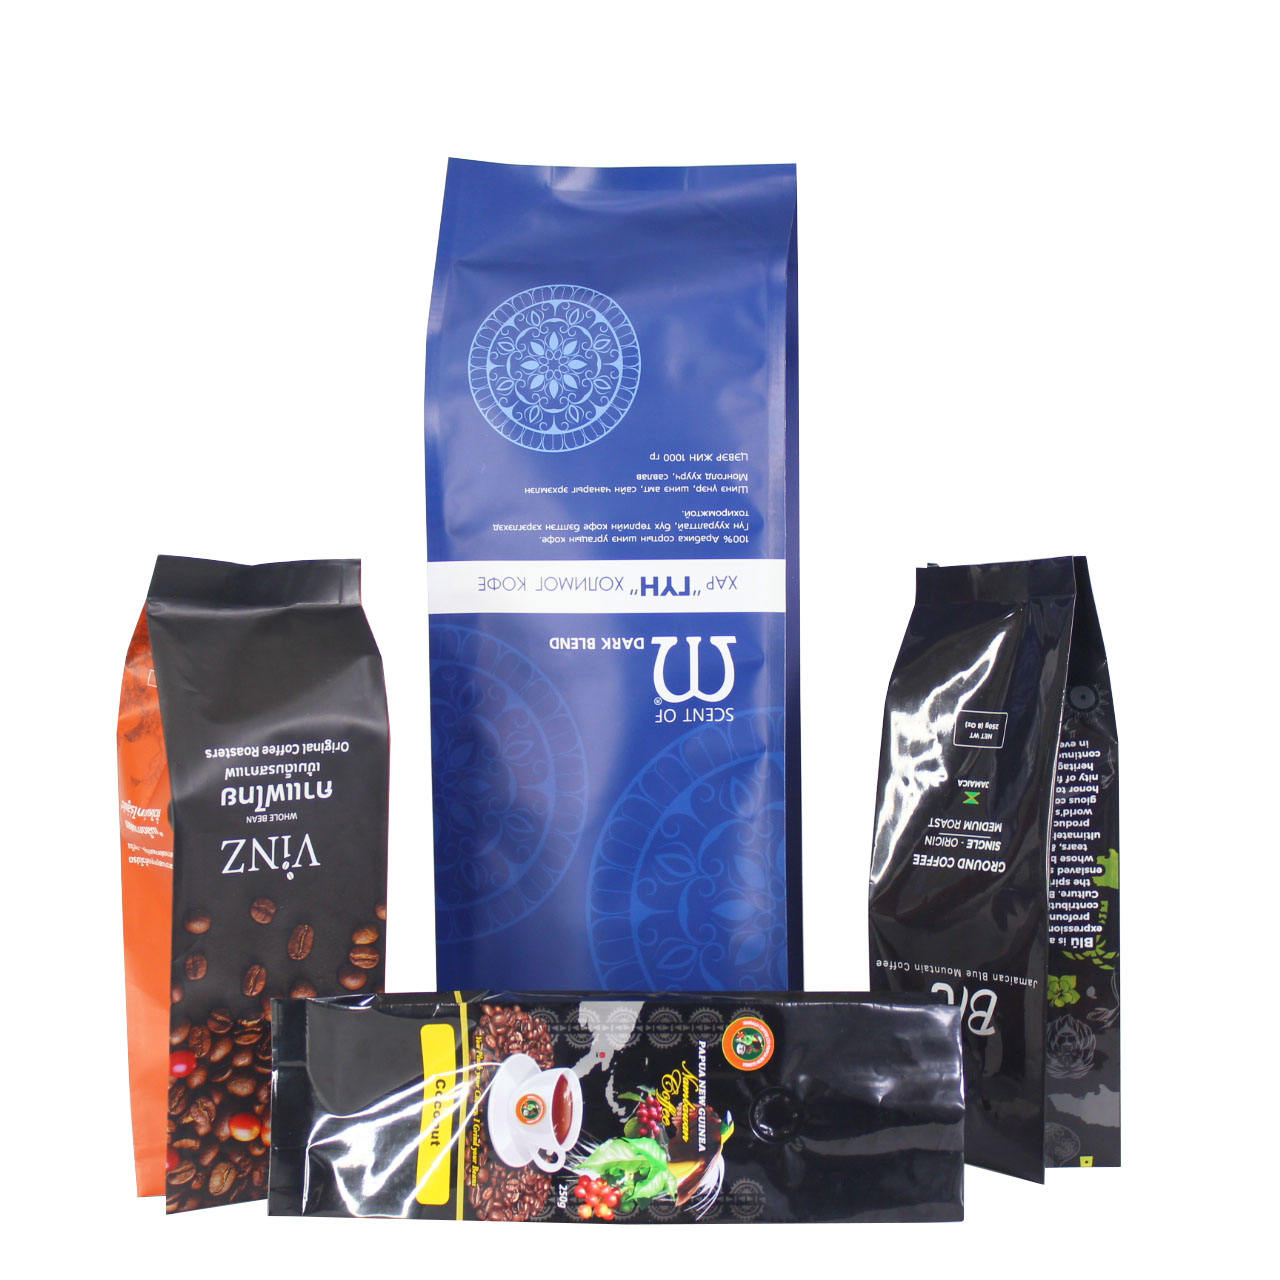 En artikel som hjälper dig att ta reda på varför du bör stödja förpackningen av återvinningsbara kaffepåsar